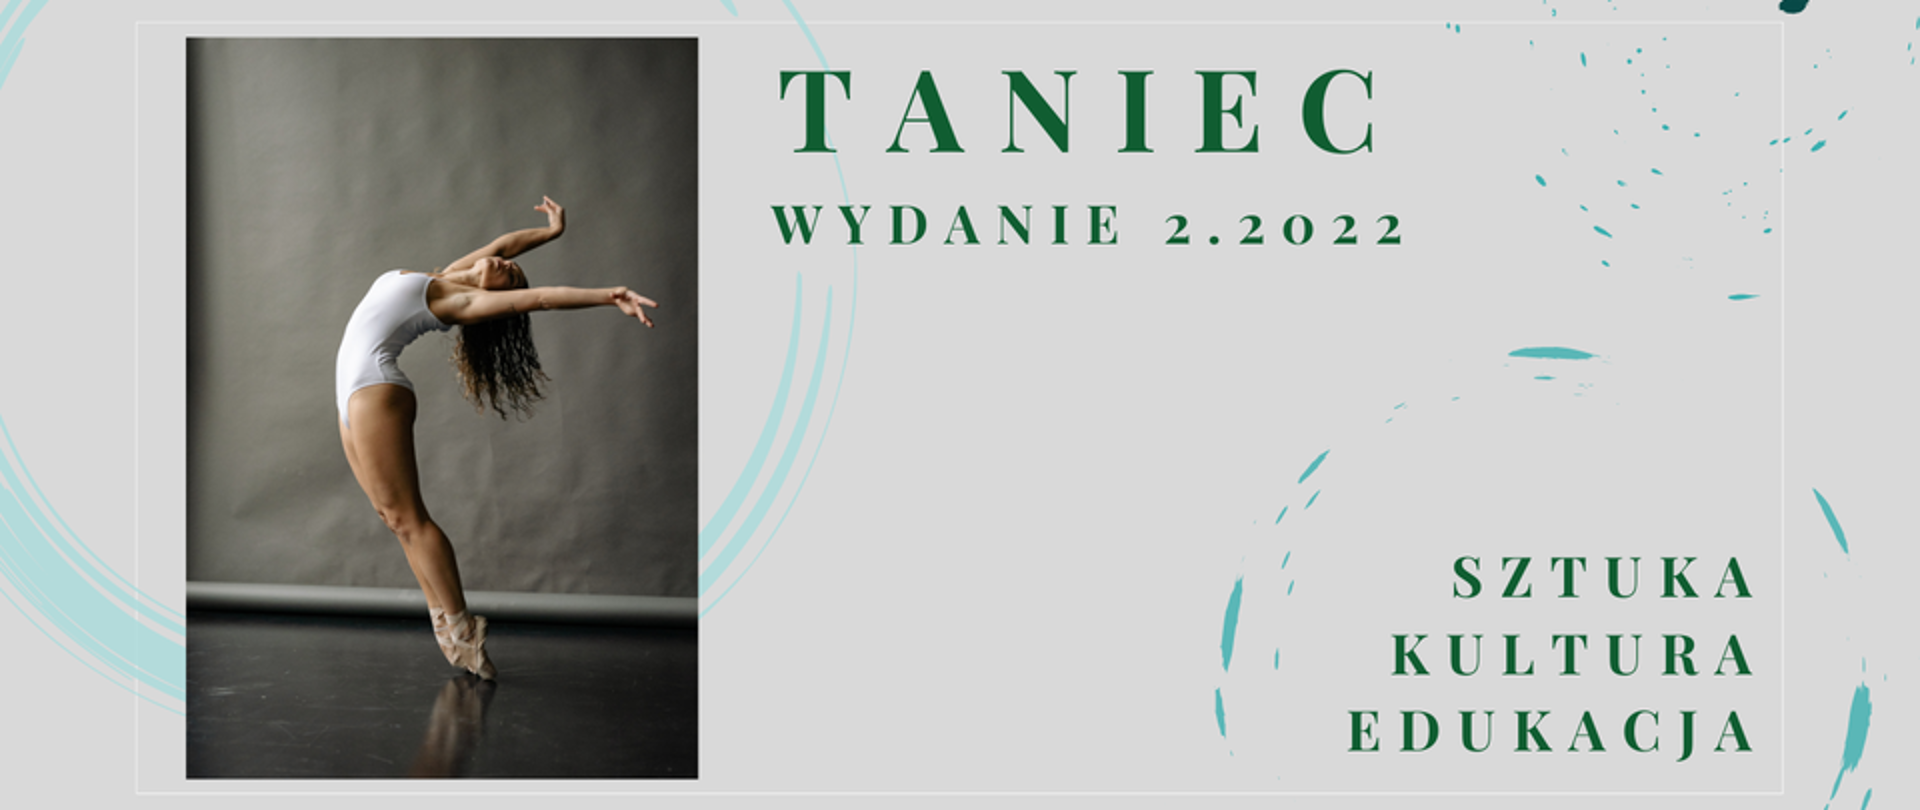 Zdjęcie baletnicy na szarym tle z tekstem "Taniec wydanie 2.2022 - sztuka, kultura, edukacja"